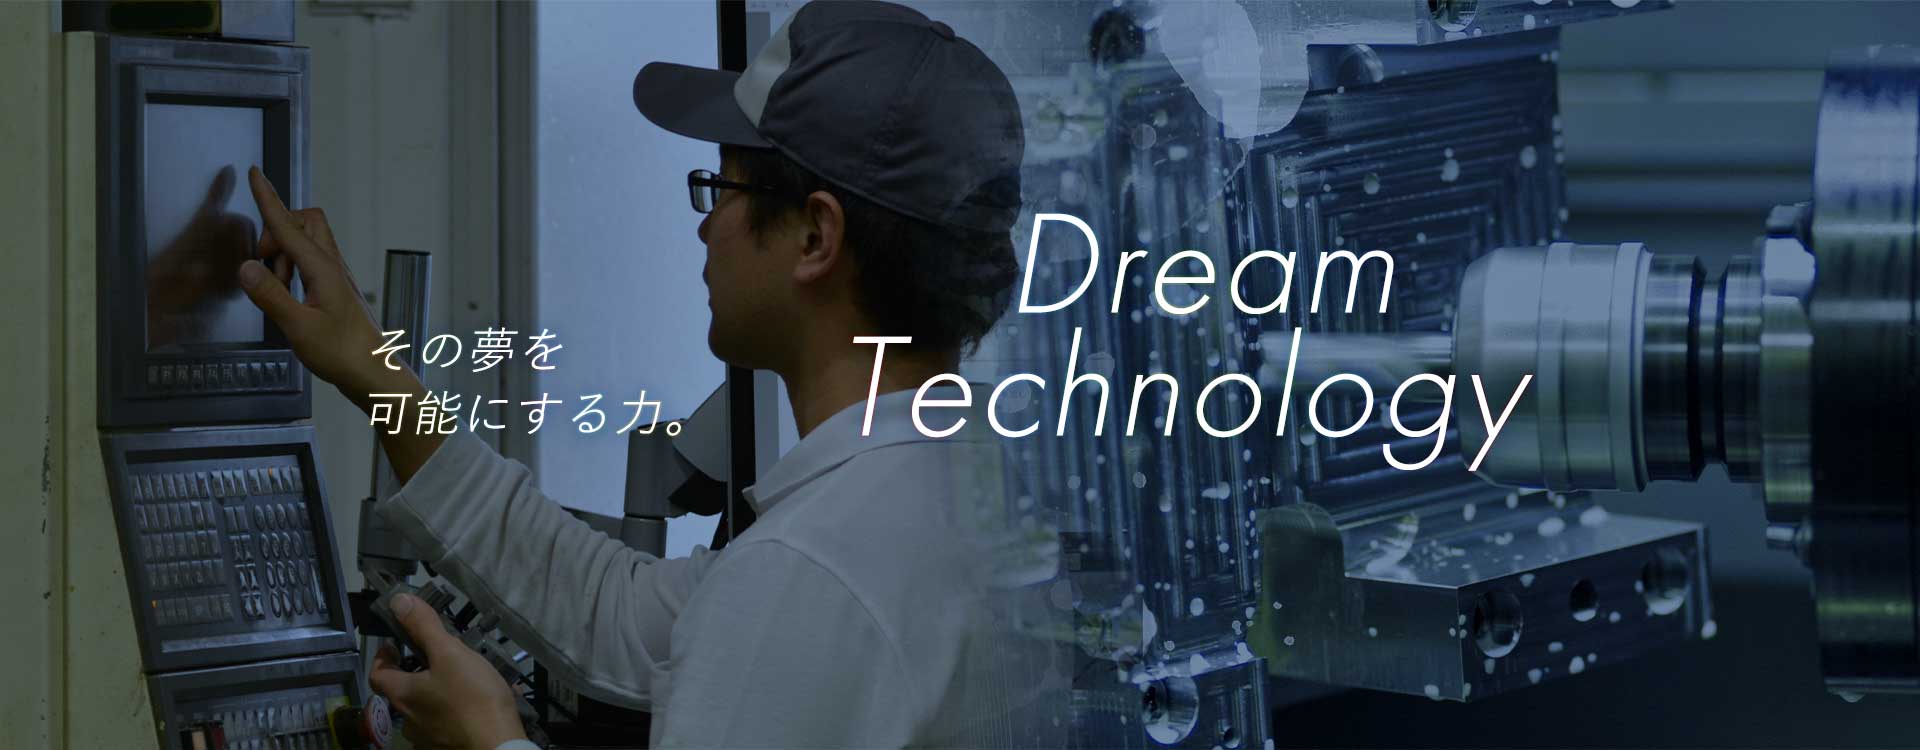 その夢を可能にする力。DreamTechnology